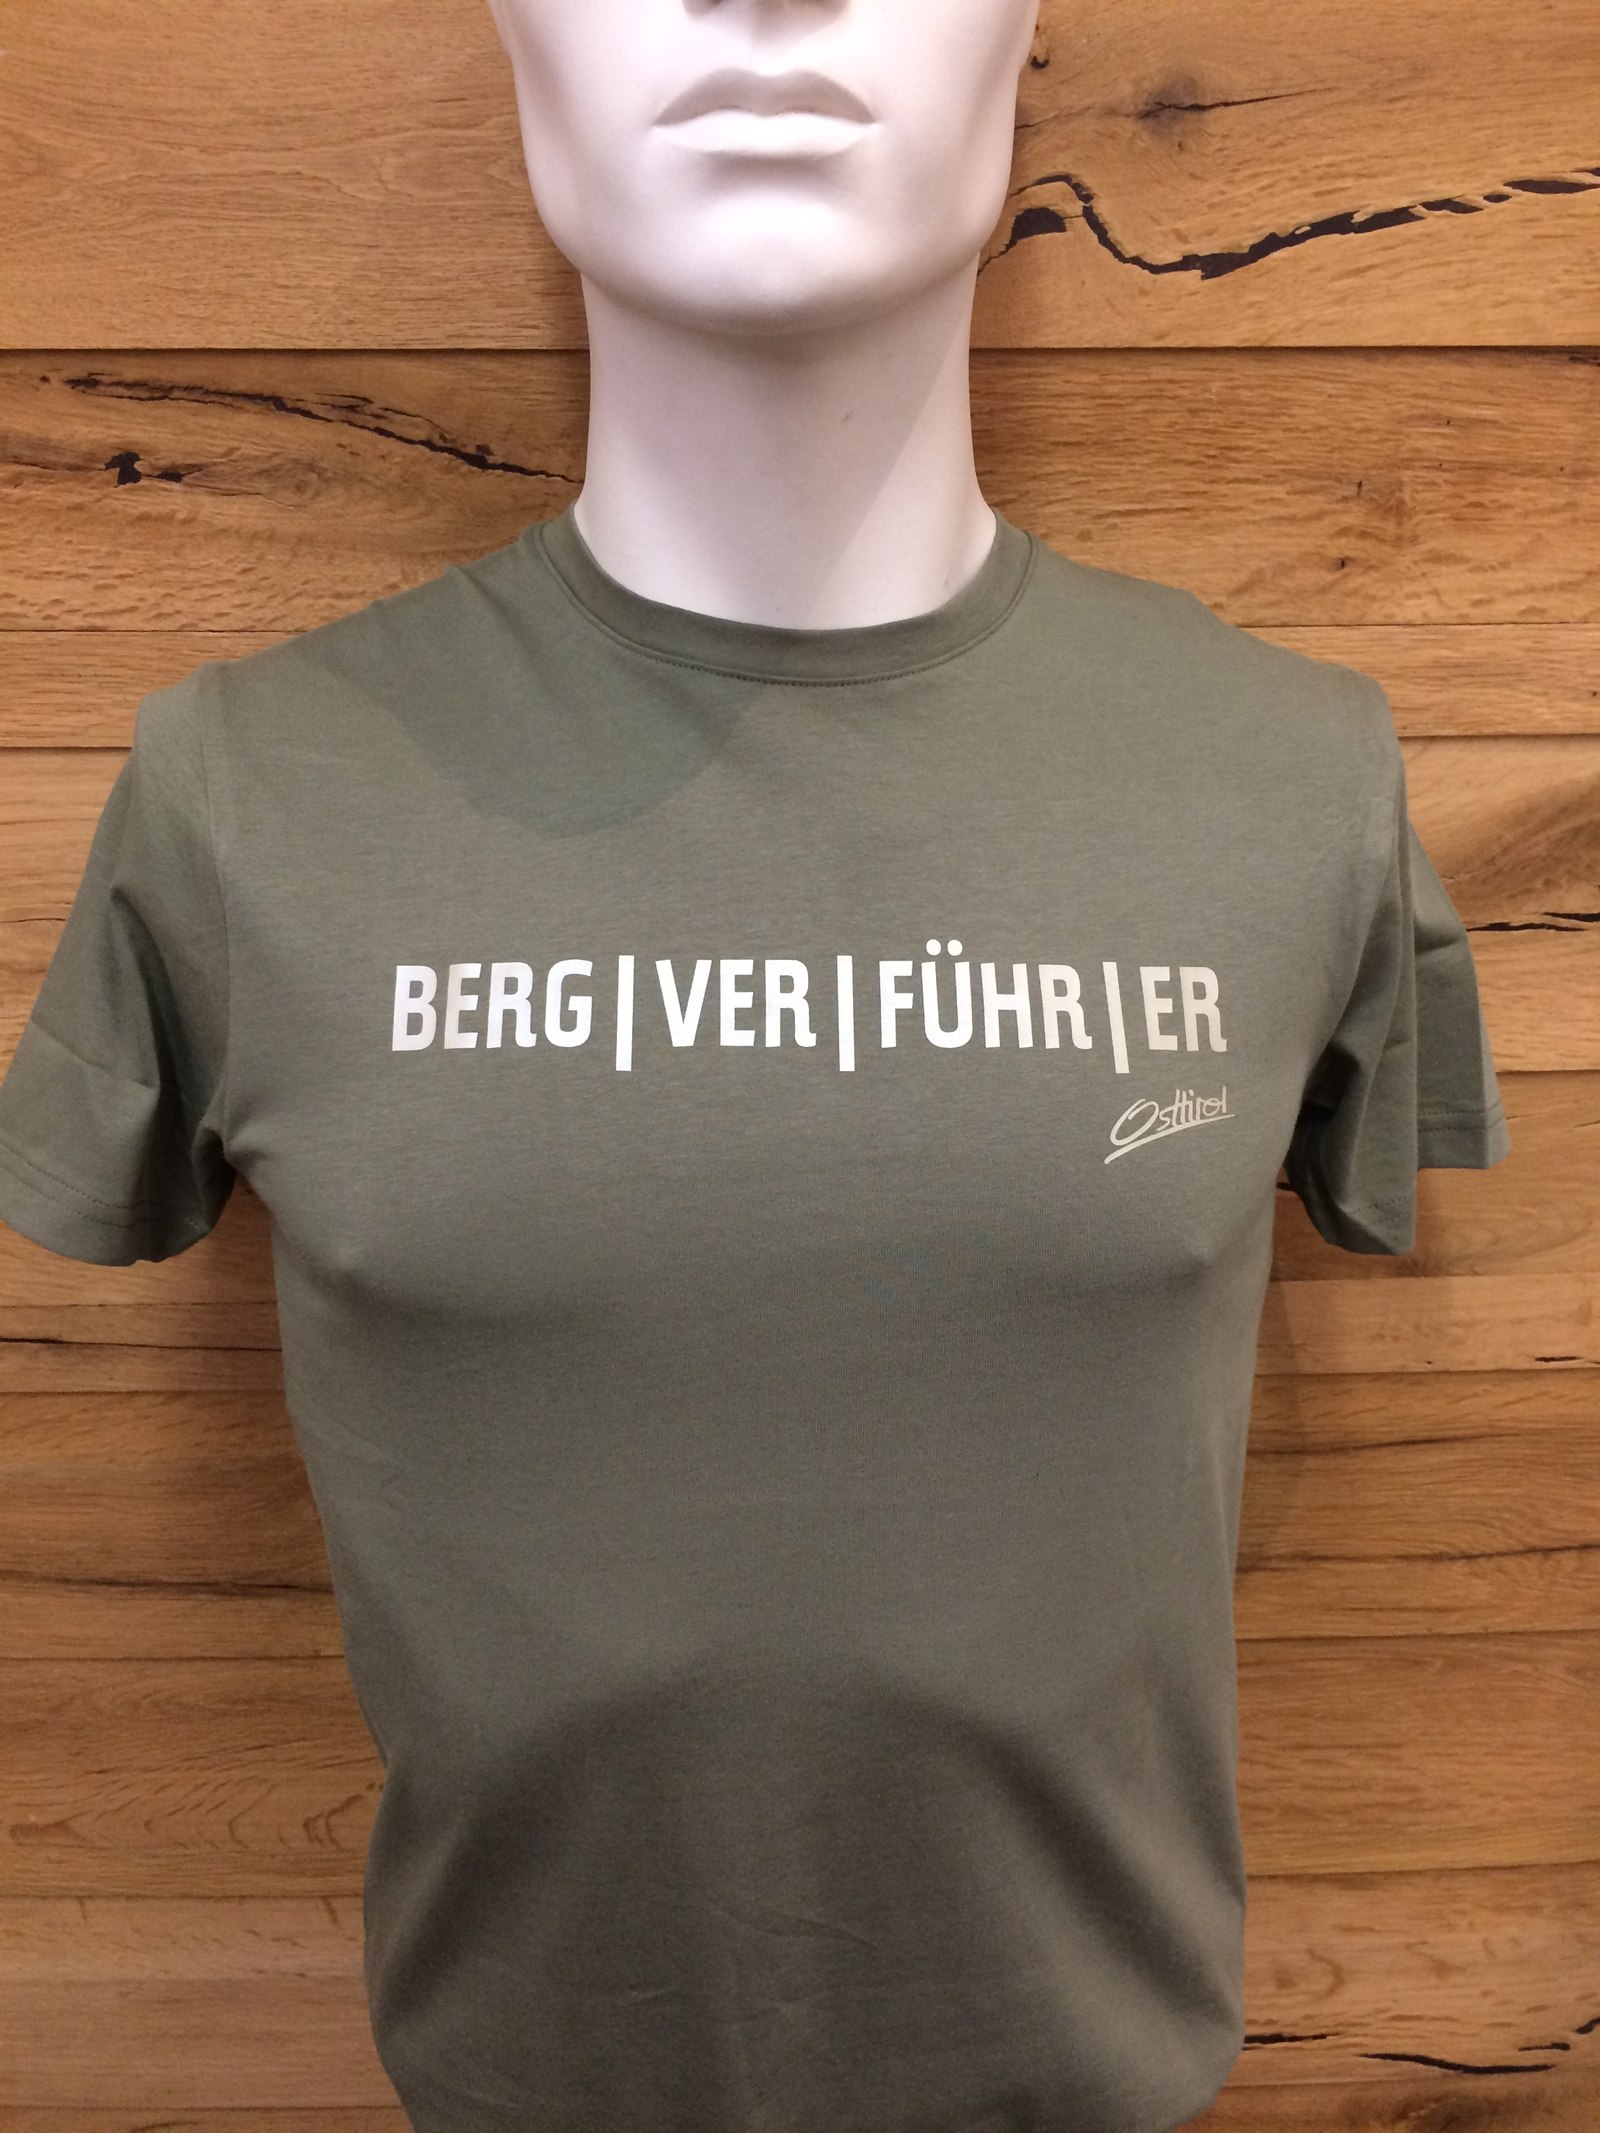 Herren T-Shirt "Berg/ver/führer" oliv